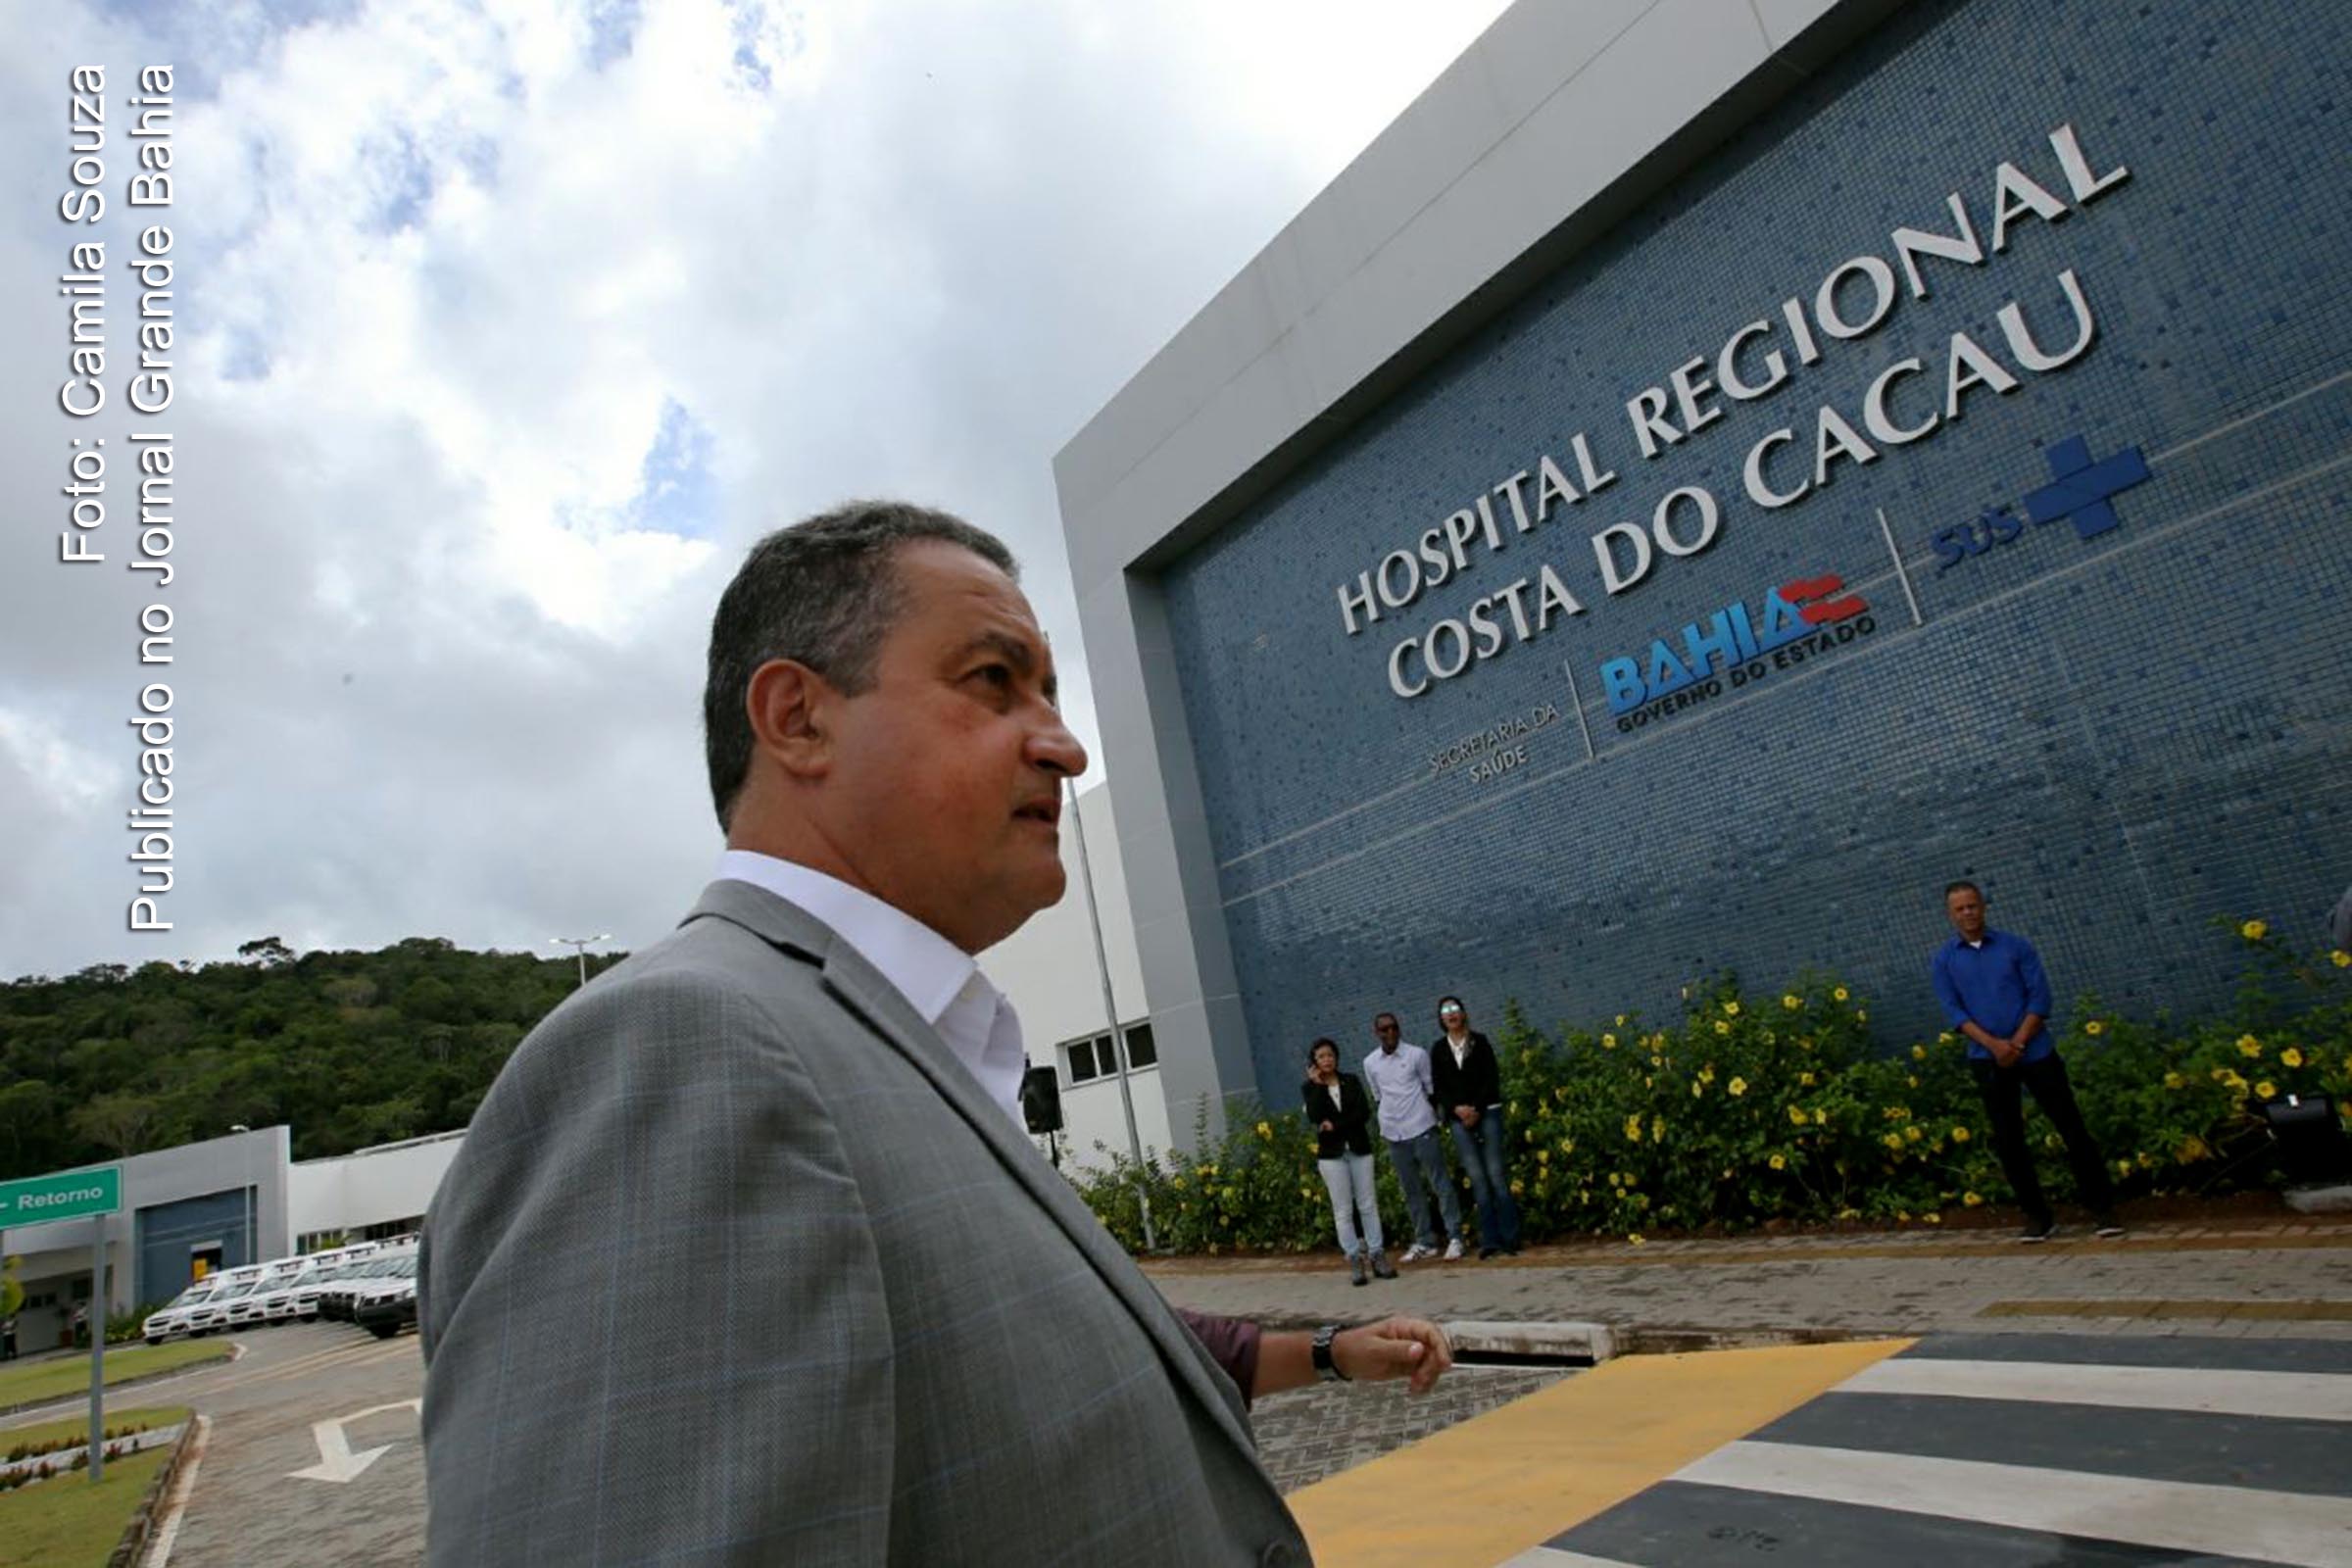 Governador Rui Costa entrega ambulâncias e realiza visita guiada no Hospital Regional Costa do Cacau, no município de Ilhéus.